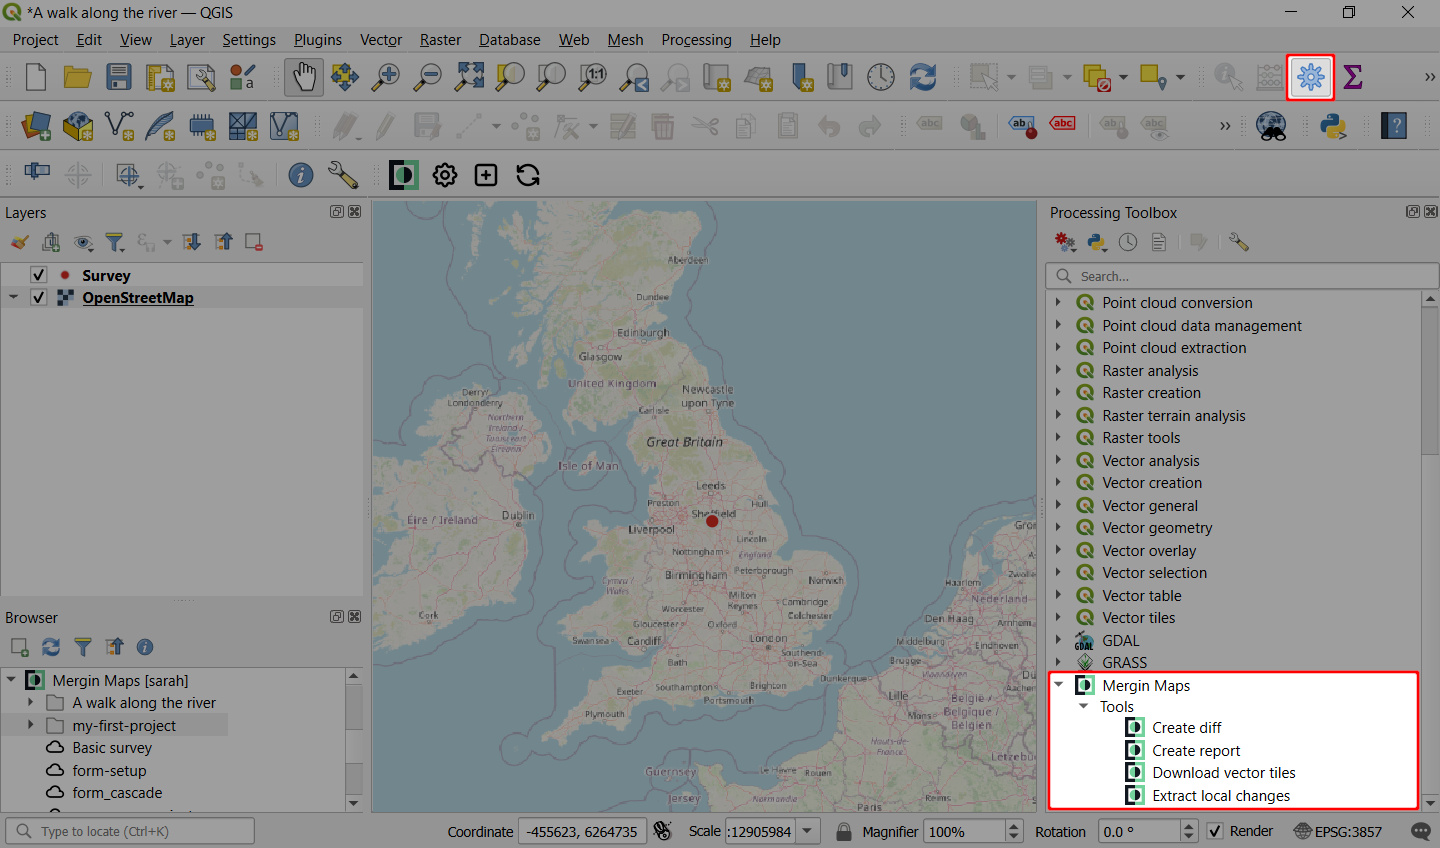 Mergin Maps tools in QGIS processing toolbox